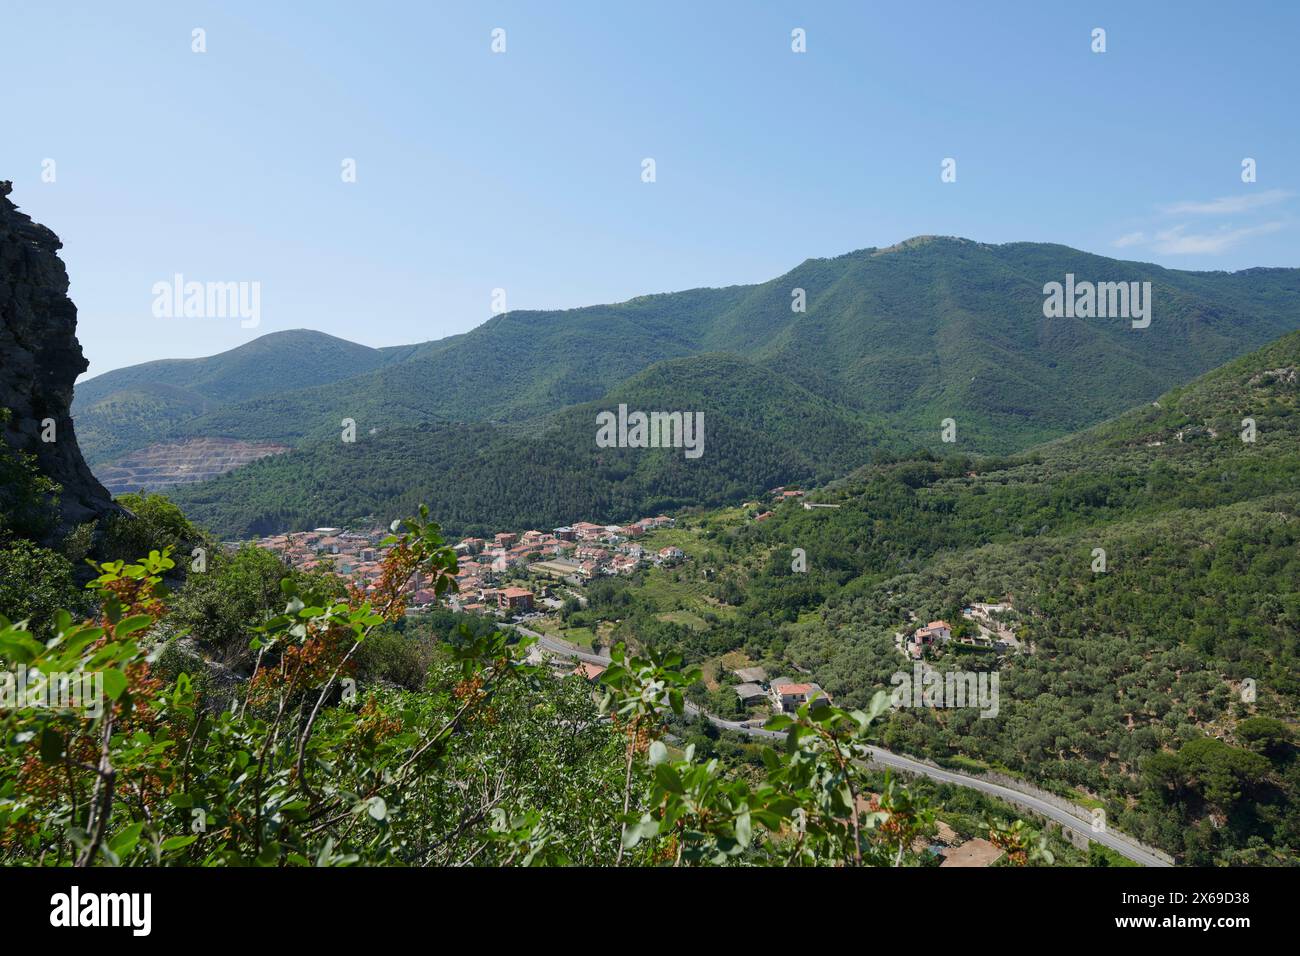 Paysage vallonné autour de Toirano, Ligurie, Italie Banque D'Images